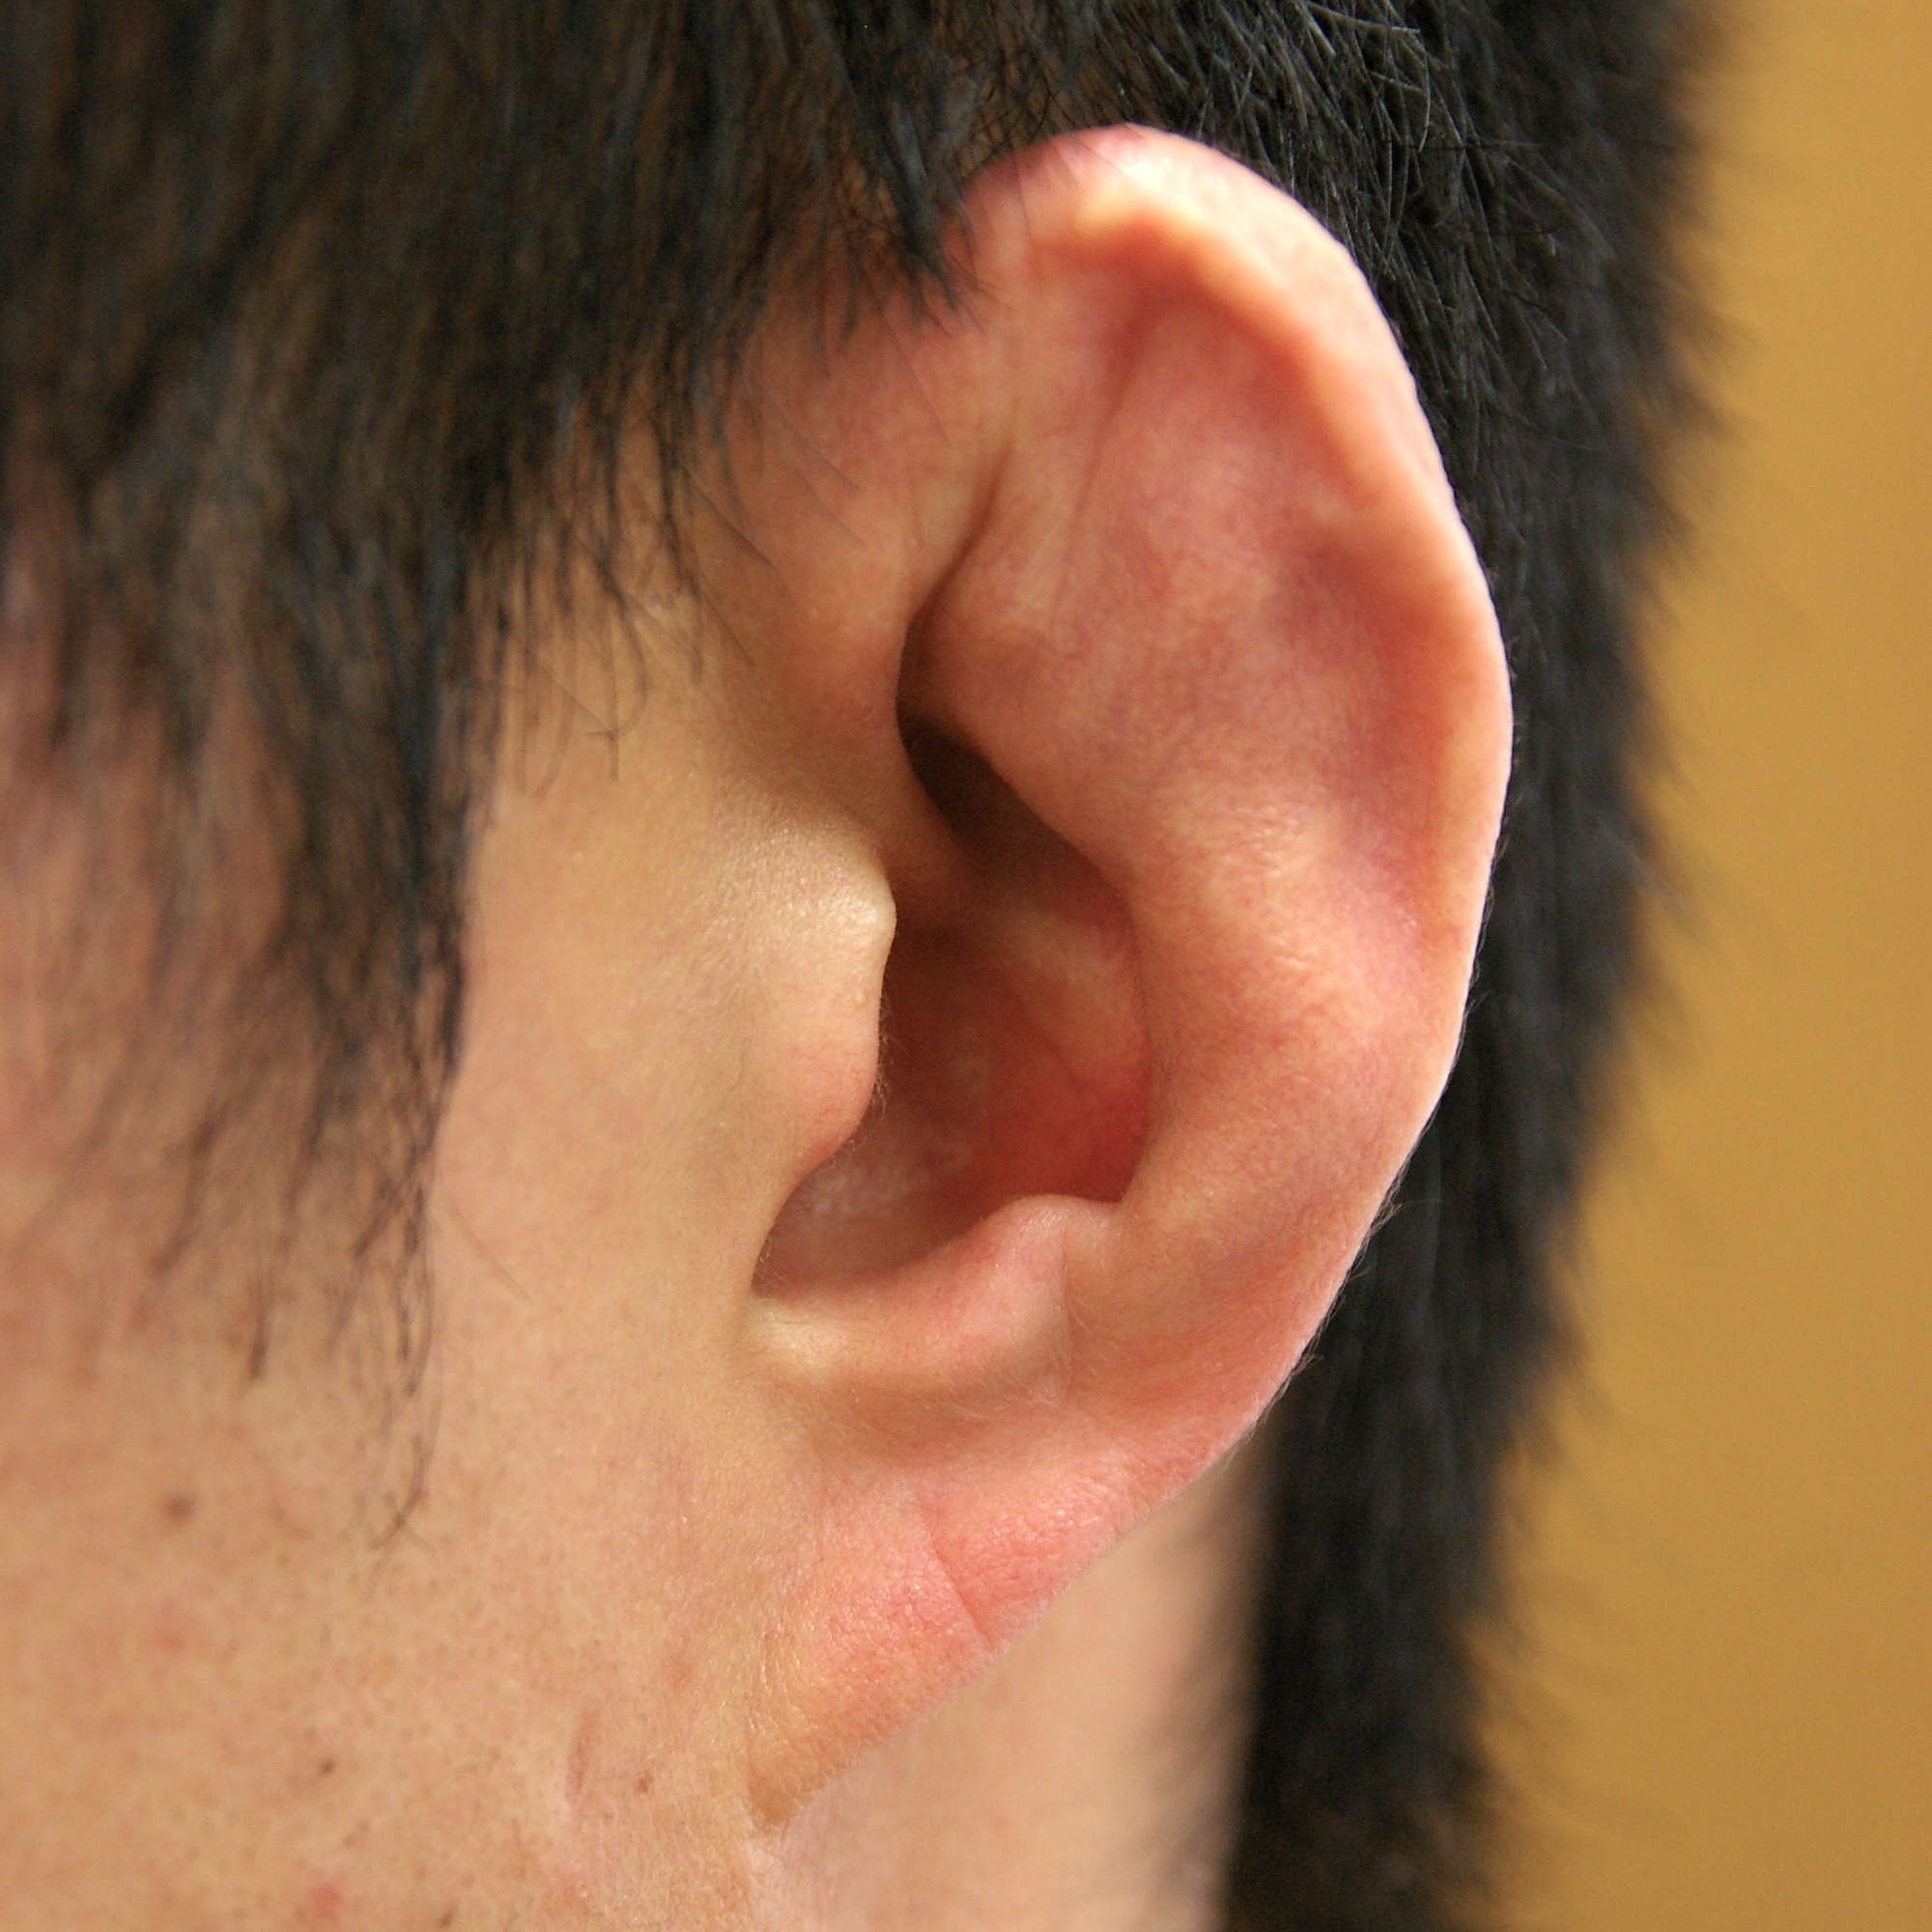 耳介偽嚢腫後の変形